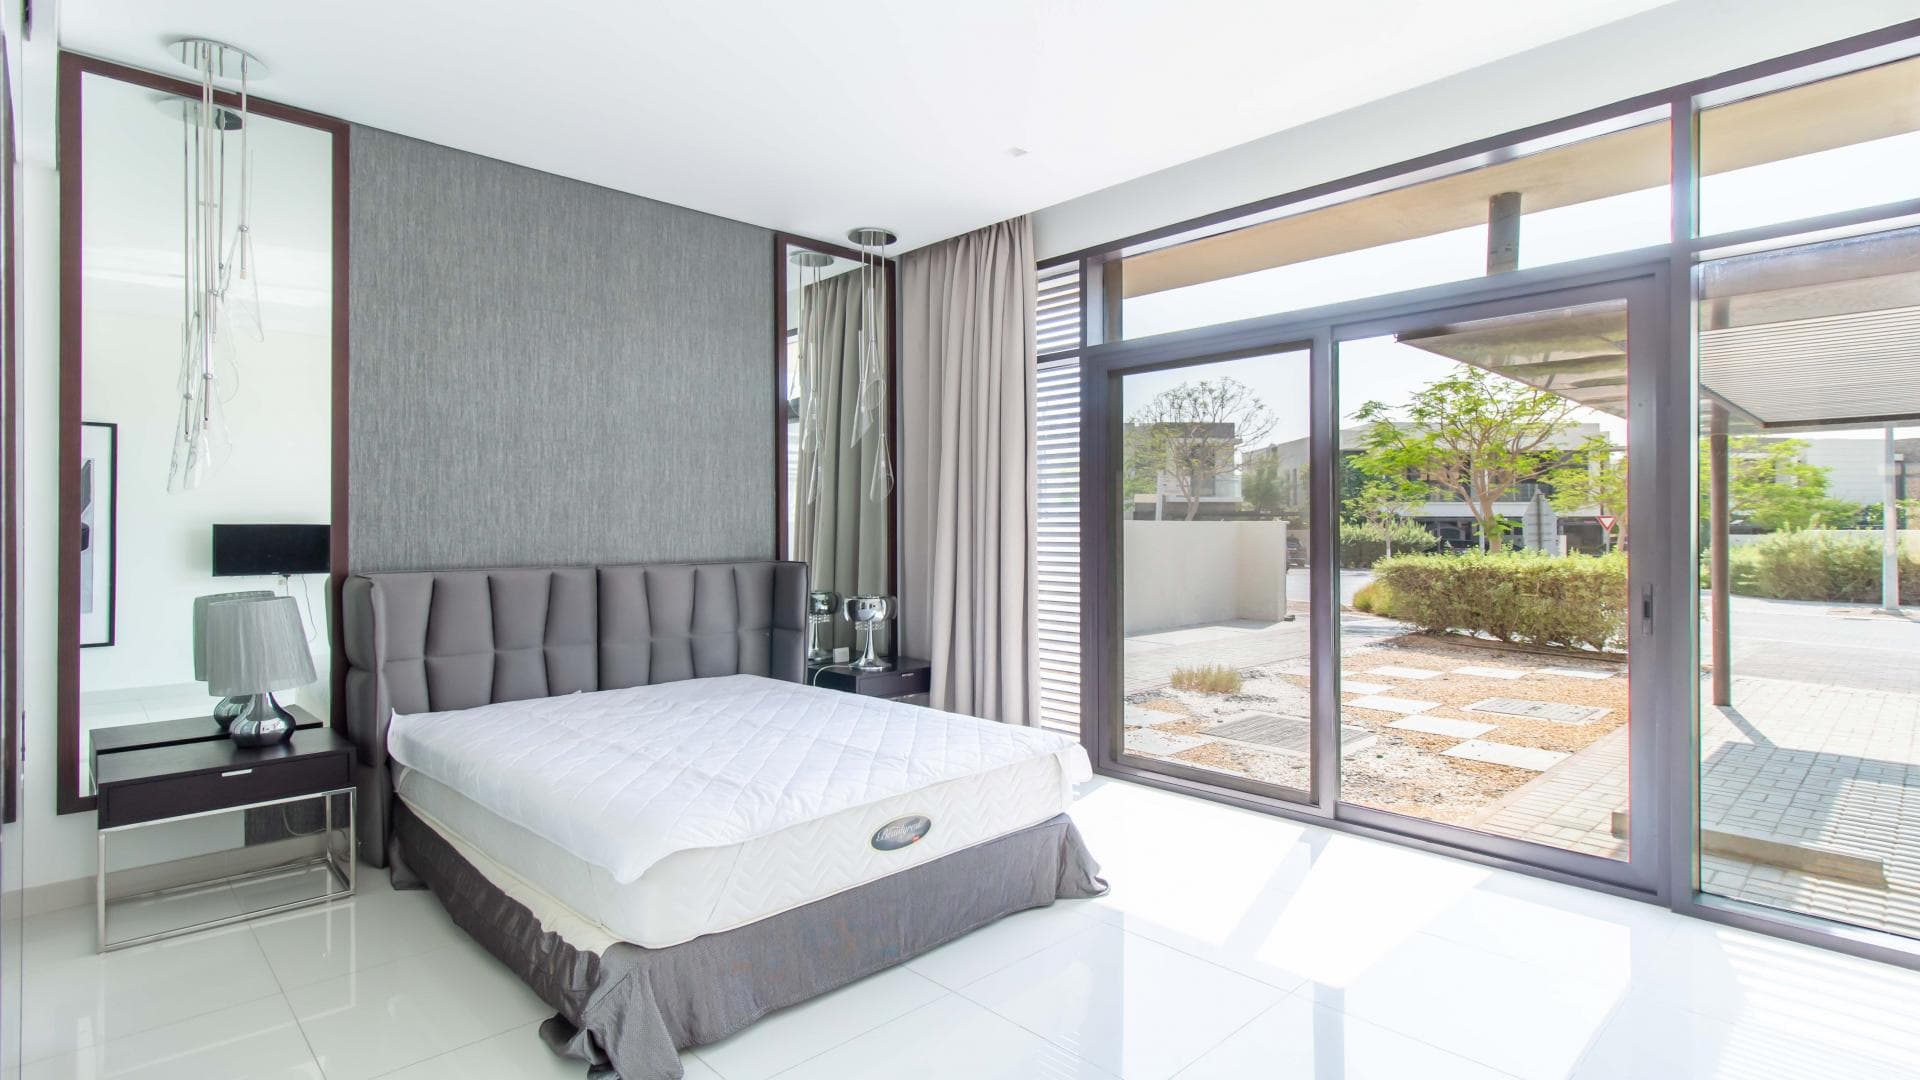 5 Bedroom Villa For Rent Tasameem Tower 1 Lp37850 20171e5e3c49240.jpg